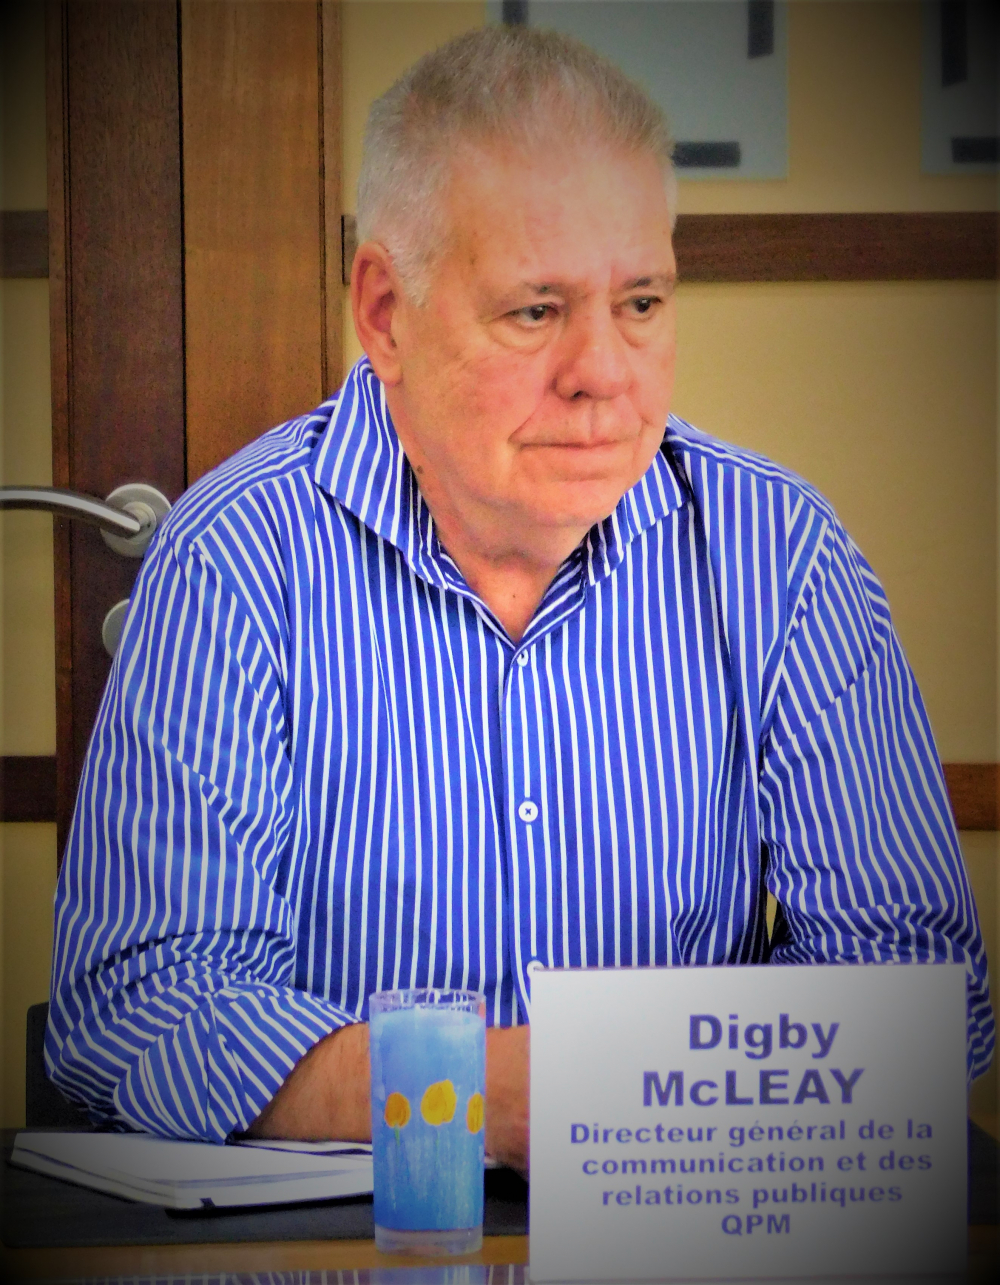 Monsieur Digby McLEAY, directeur général de la communication et des relations publiques de Queensland Pacific Metals (QPM).